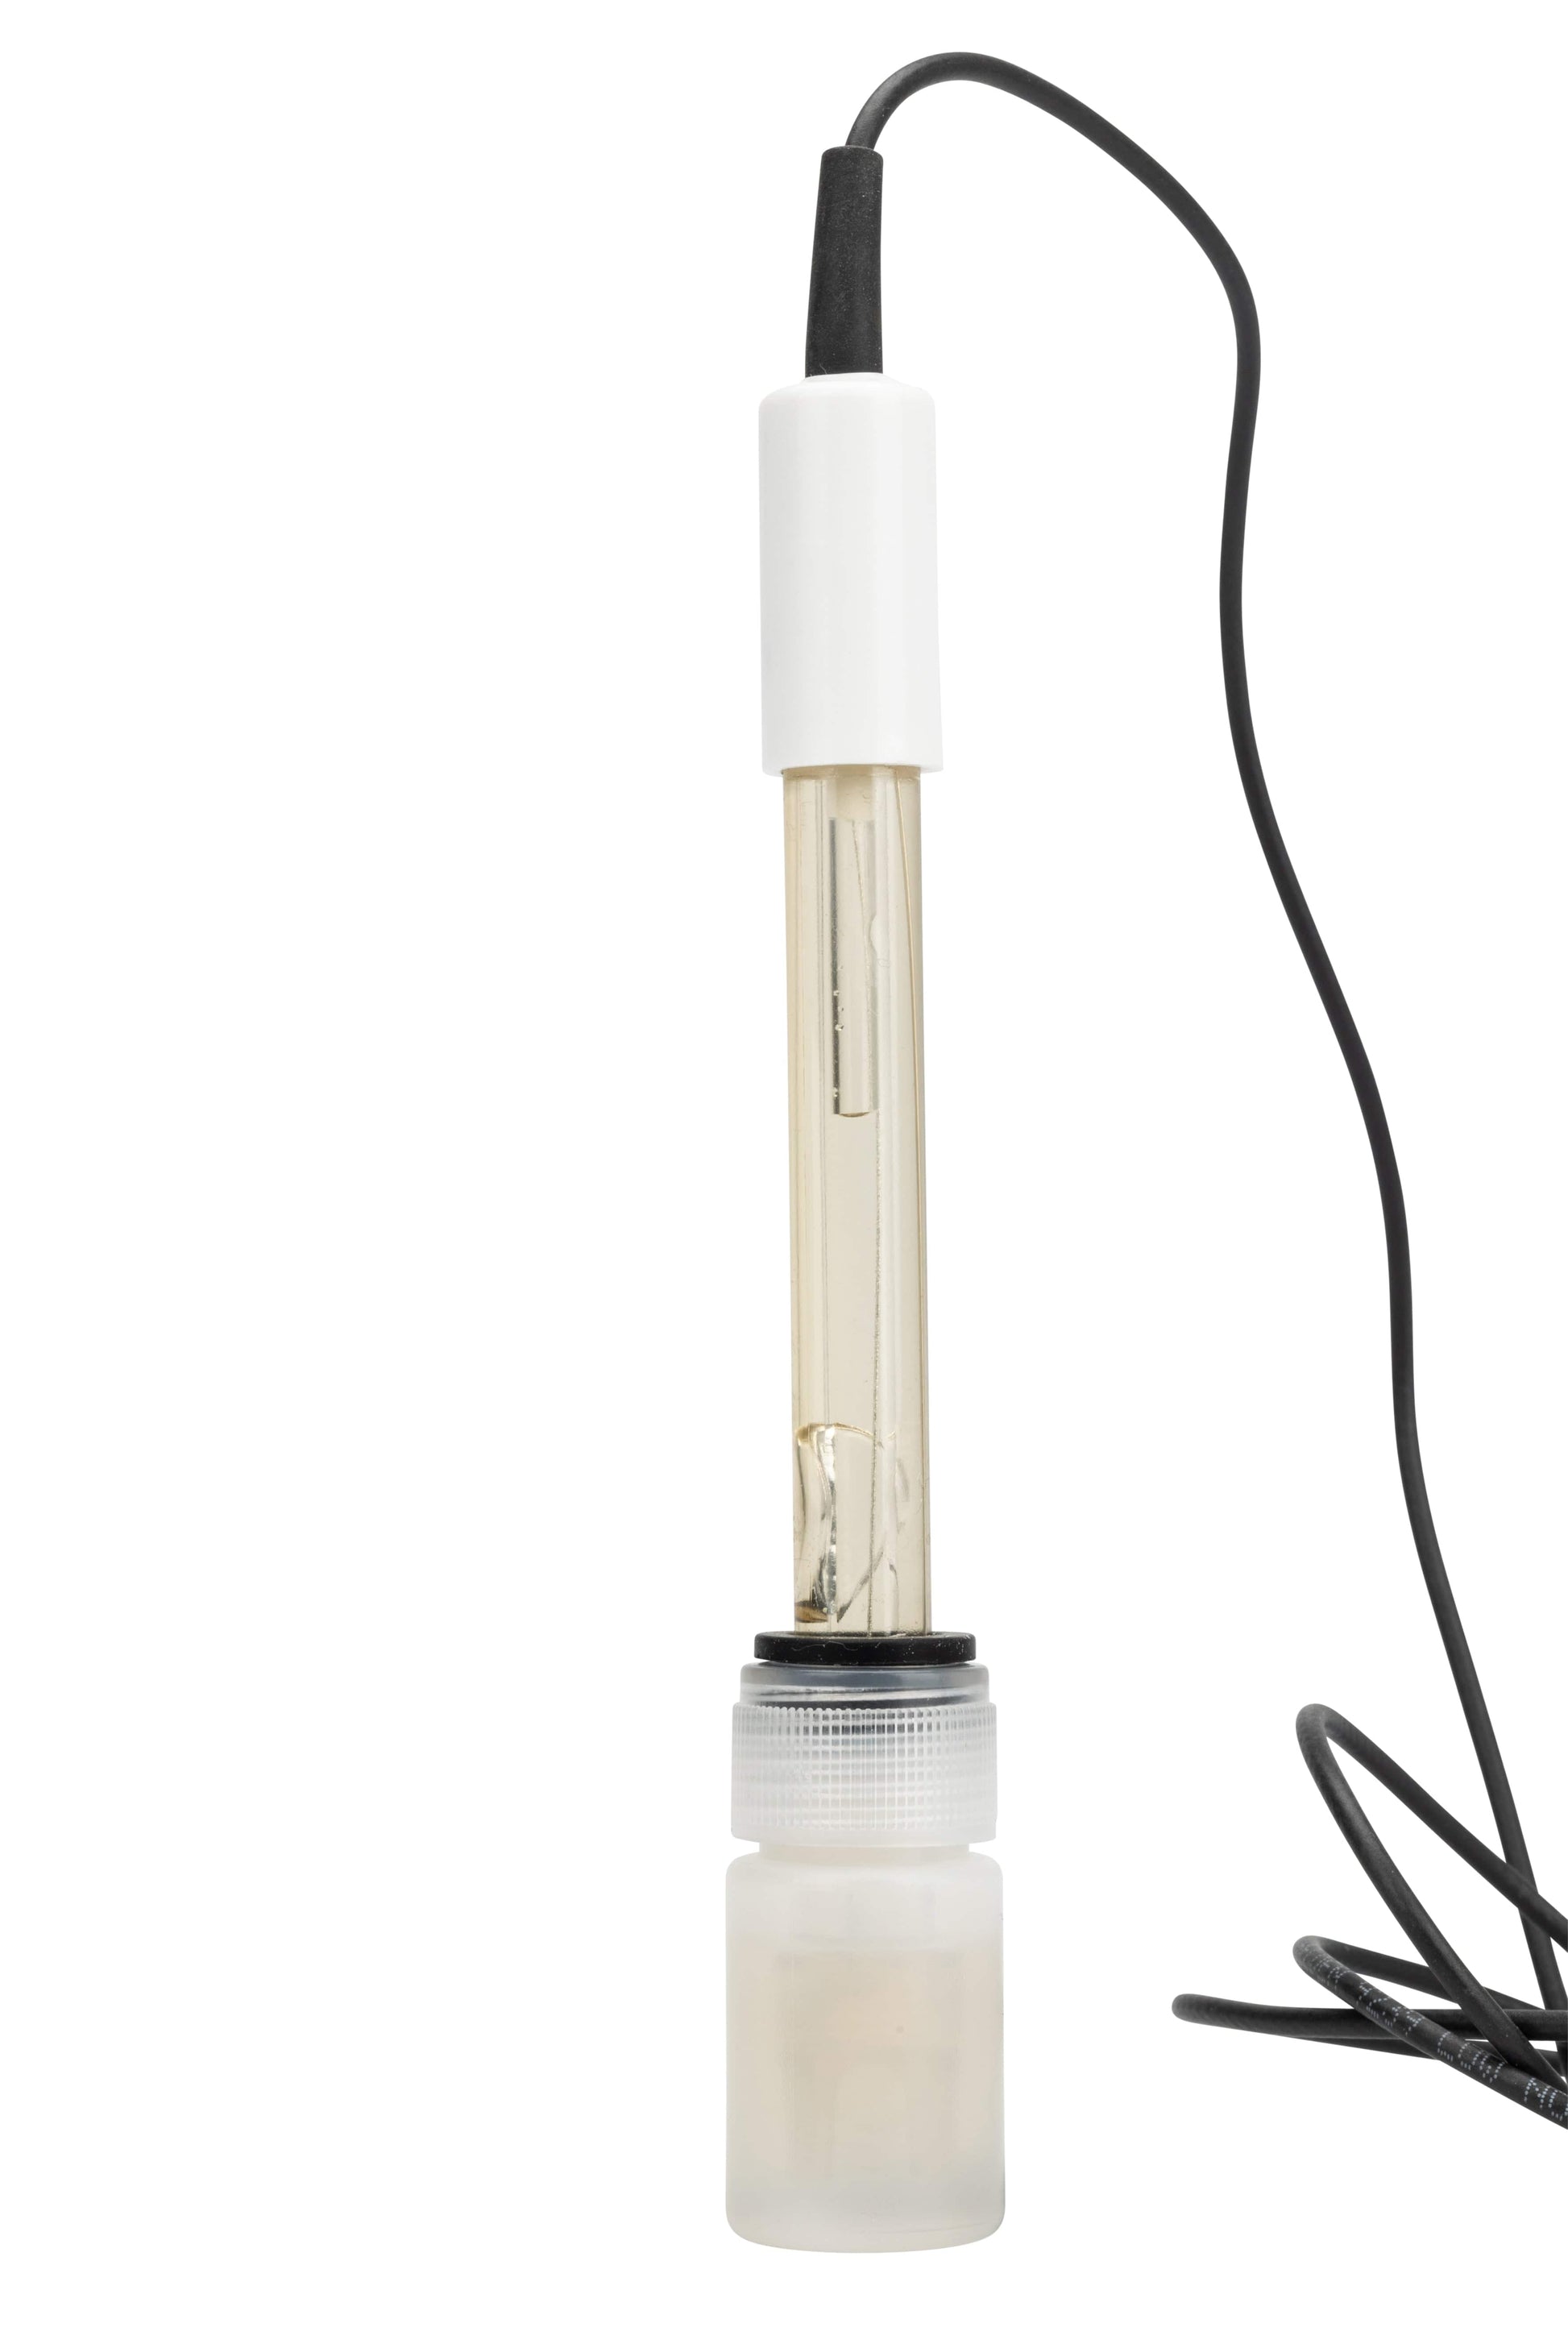 une Électrode de pH à usage général avec un fil attaché par Thermometer.eu.